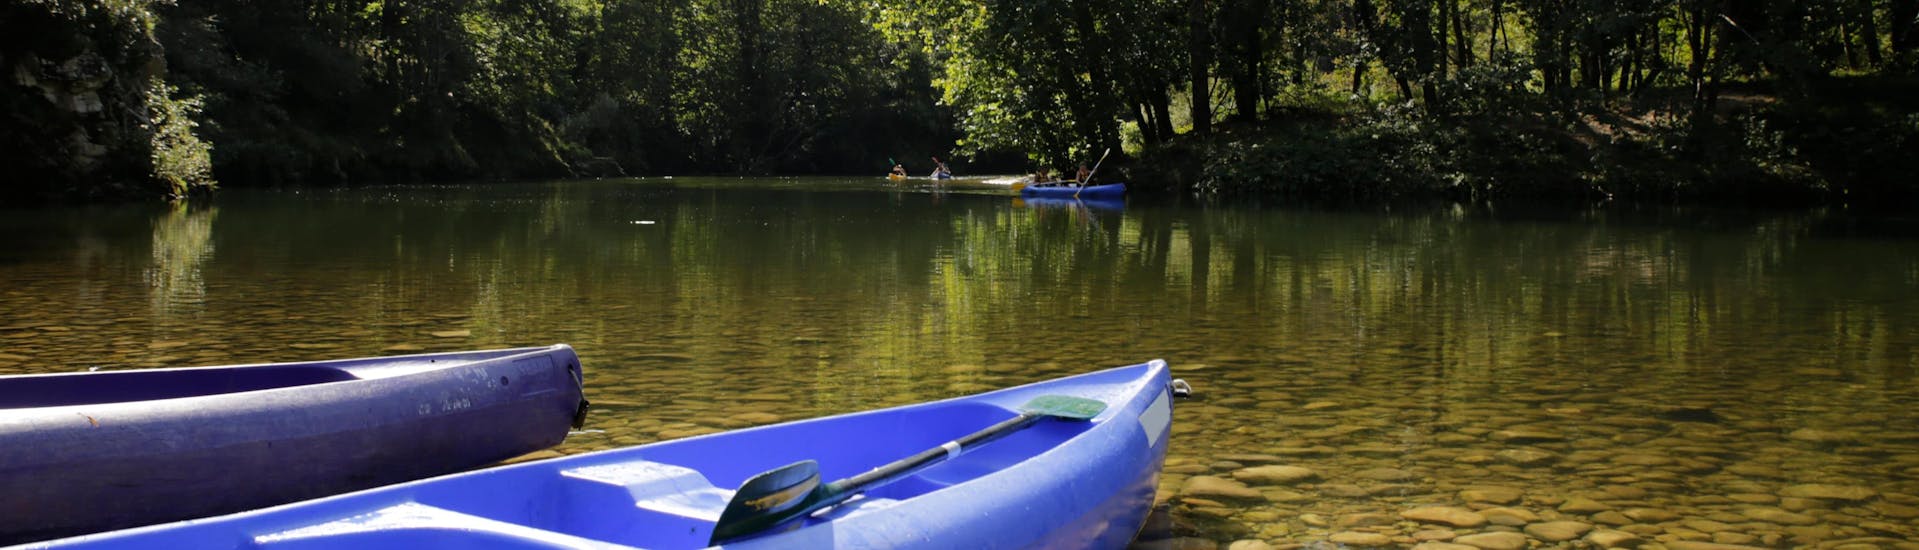 Vista de algunas canoas y kayaks en el hermoso río Sella, que puedes descubrir con una excursión en canoa o kayak en Arriondas, España.